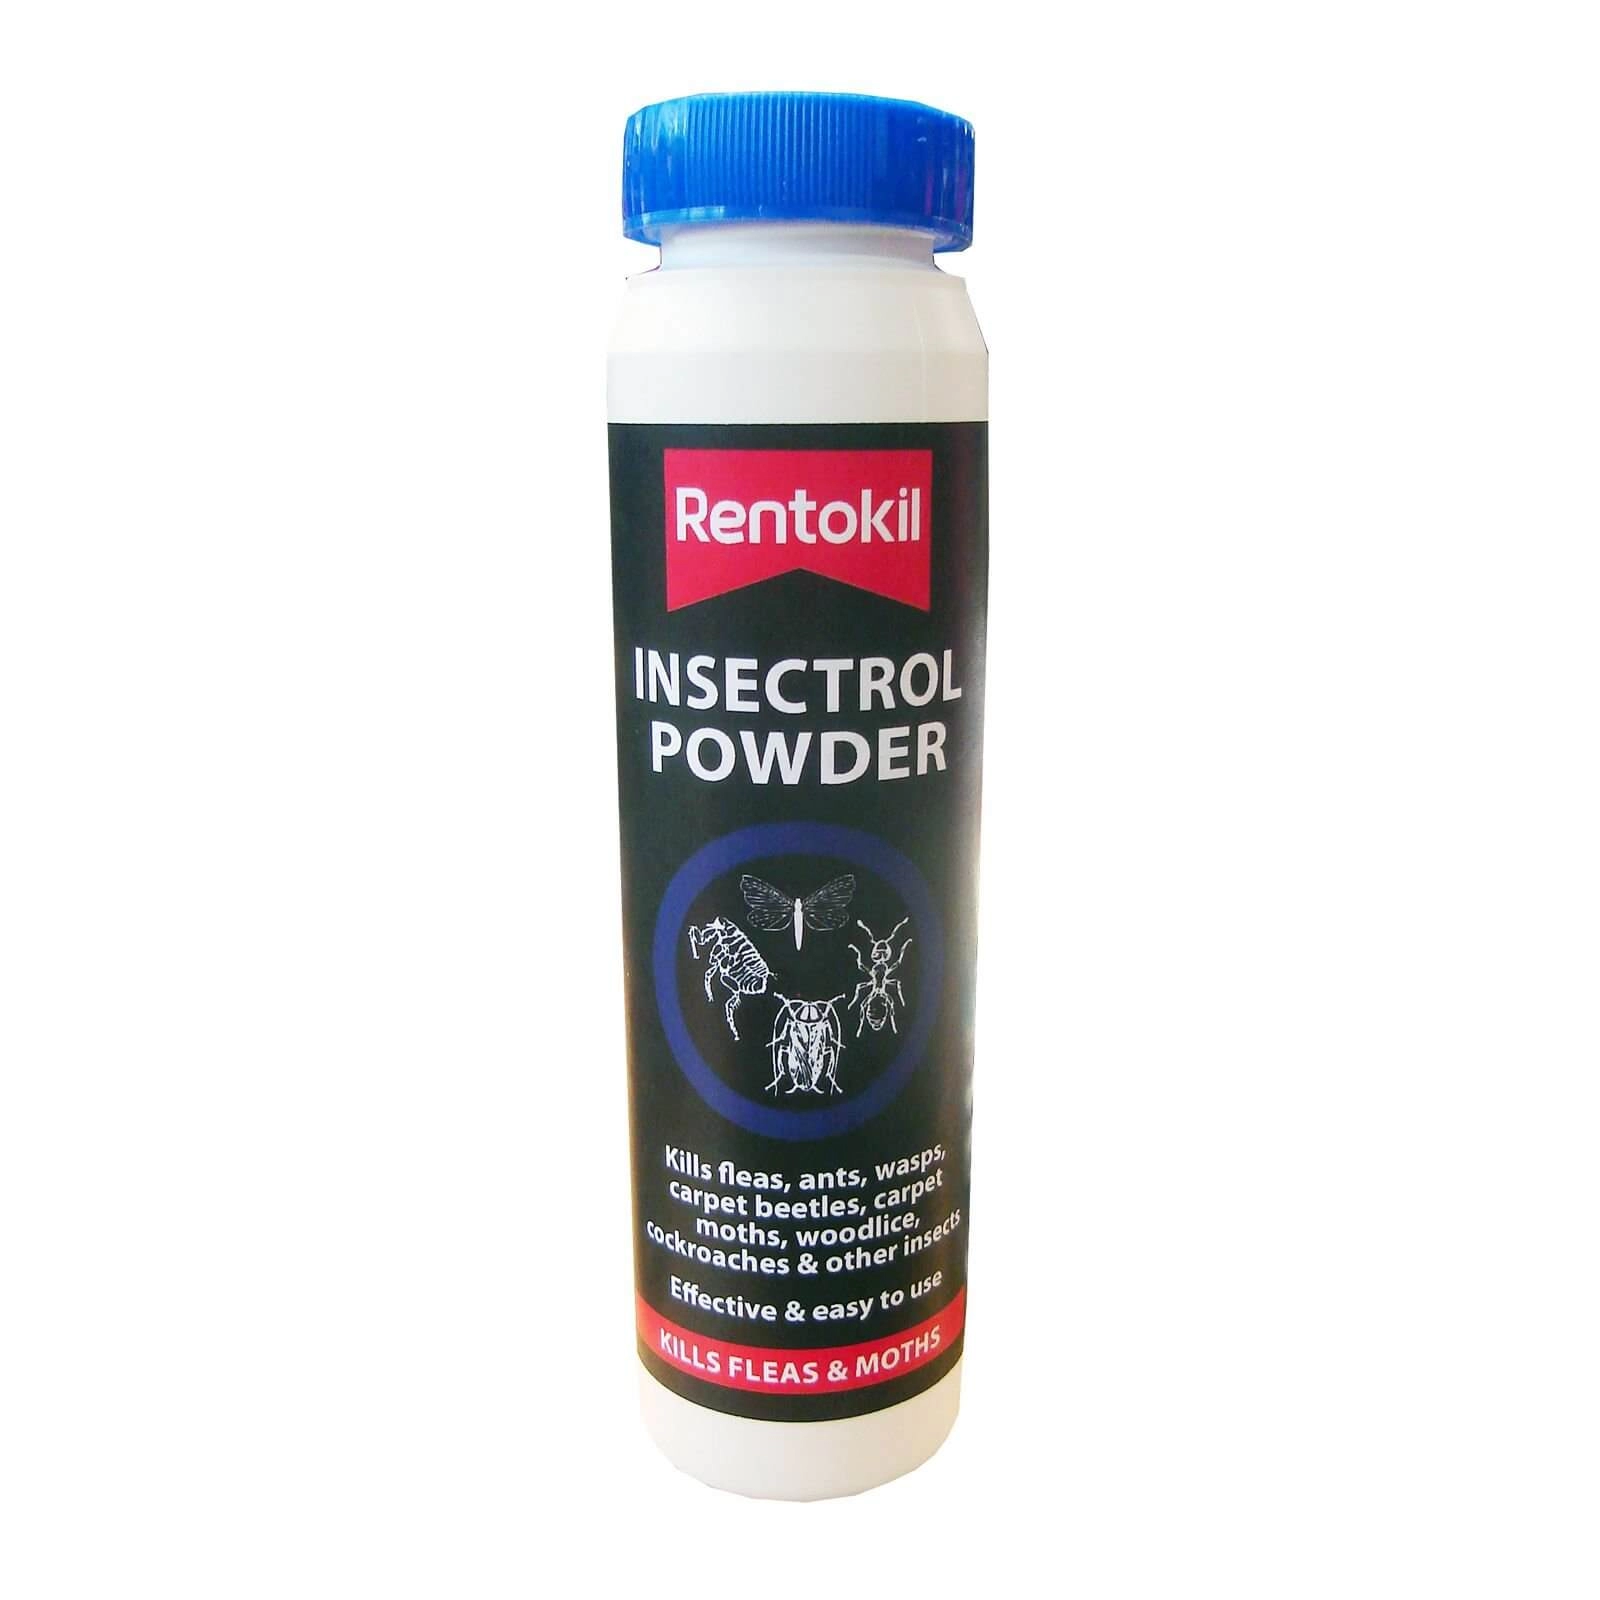 Rentokil Insectrol Powder